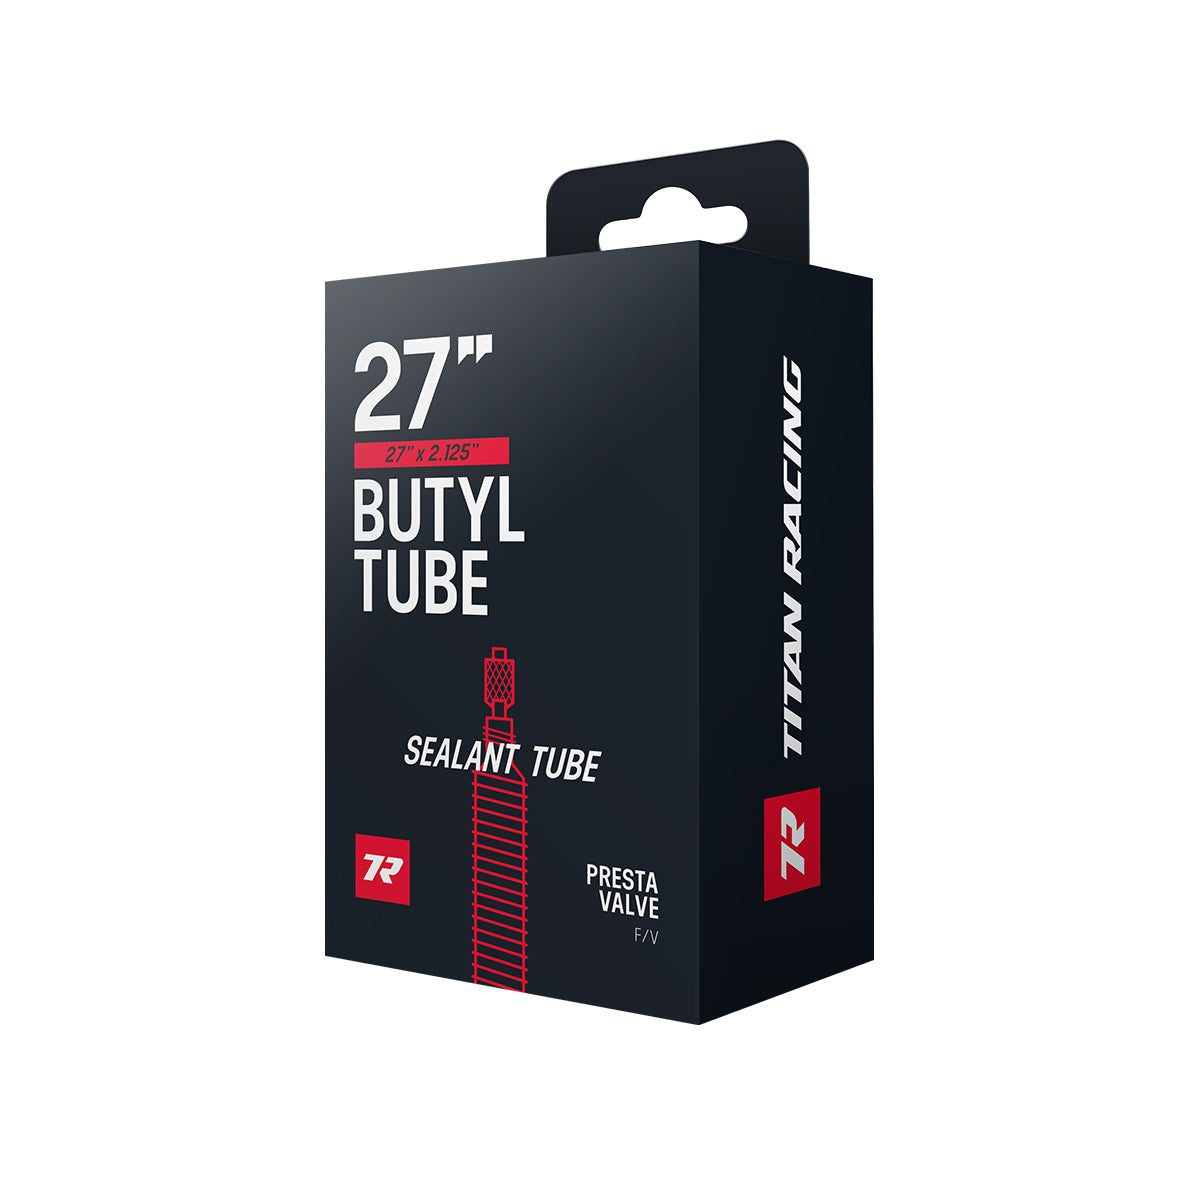 Titan Racing Sealant Tube 27"